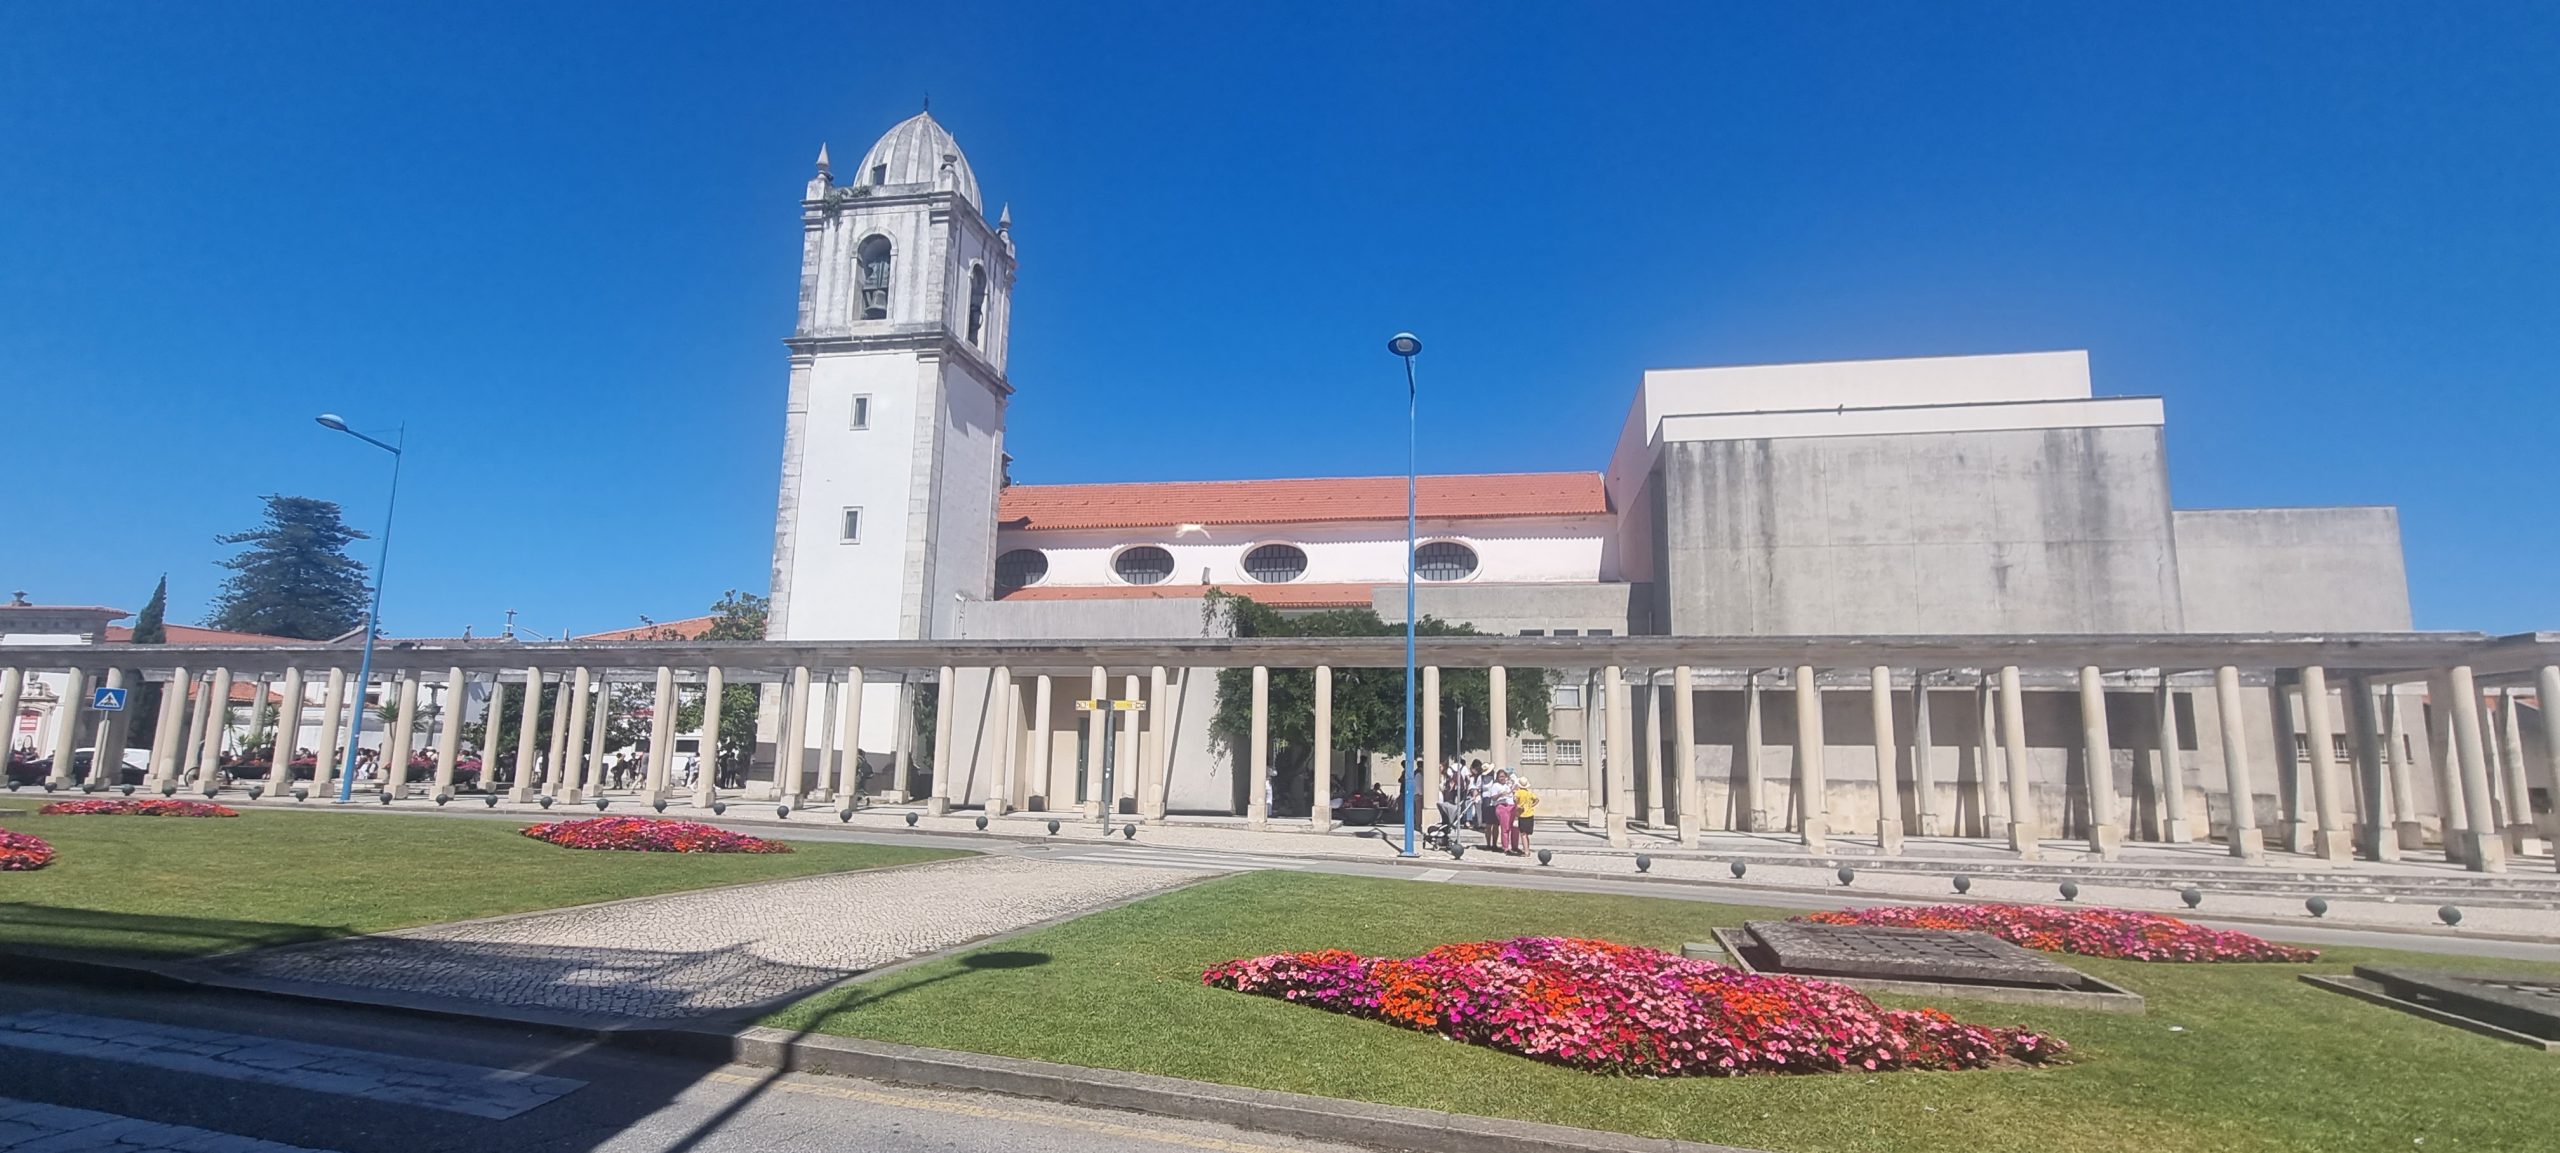 Catedral de Aveiro.